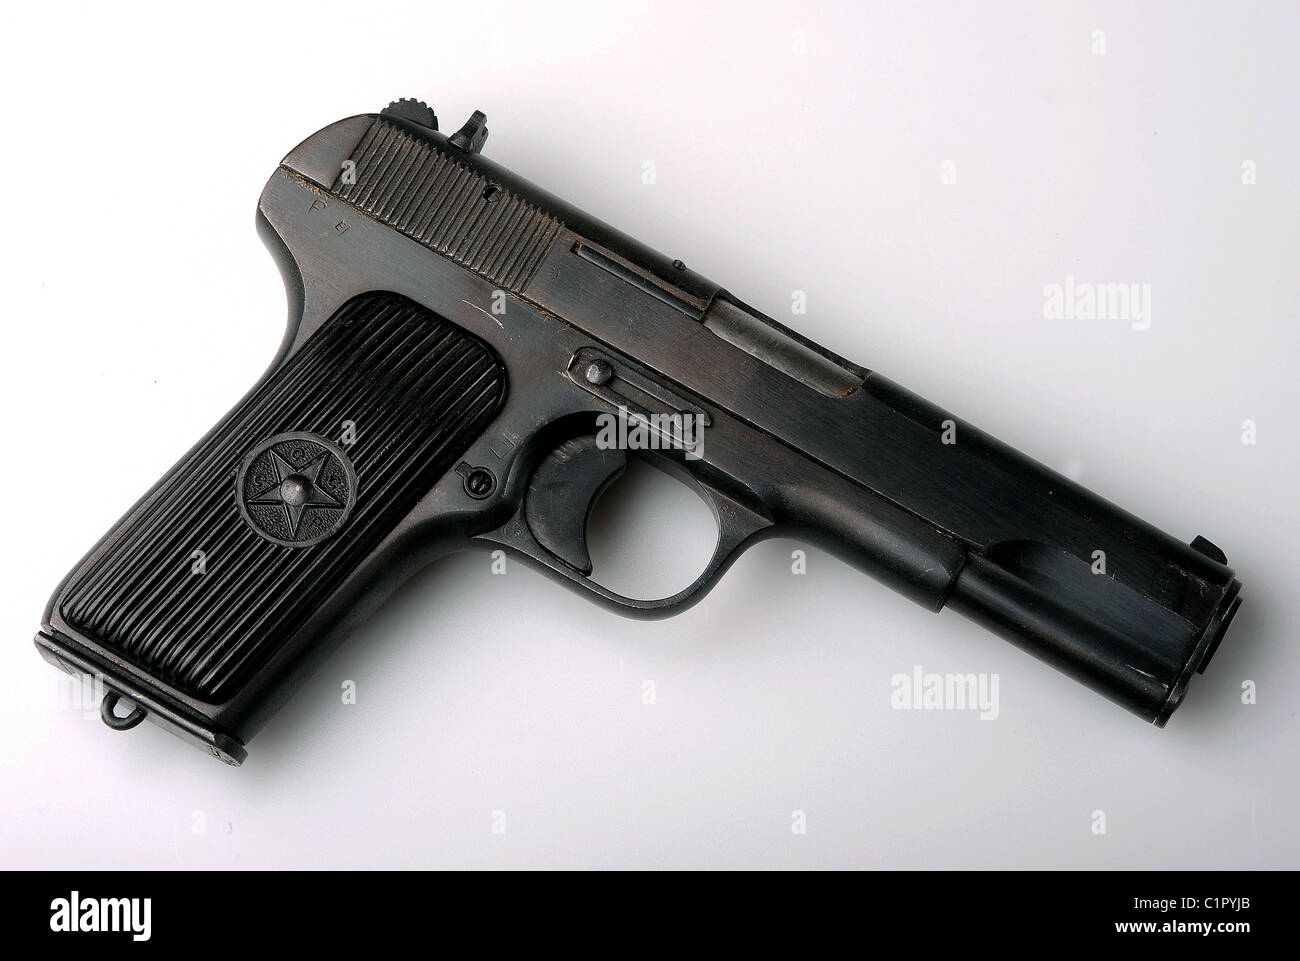 A Russian Tokarev automatic pistol Stock Photo